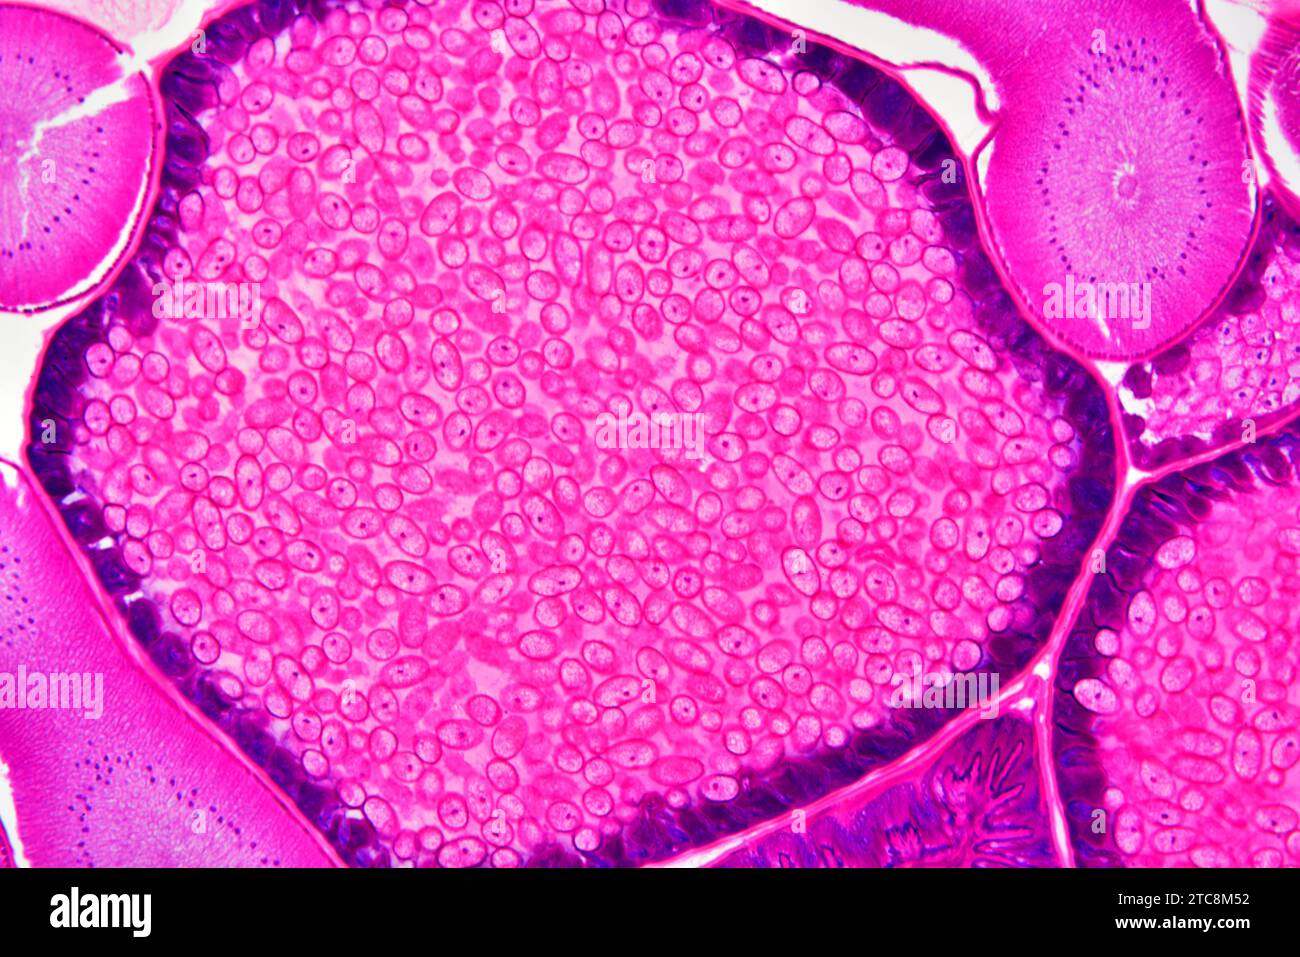 Ascaris lumbricoides femelle montrant les ovaires et l'utérus avec des oeufs. Microscope optique X150 à 10 cm de large. Banque D'Images